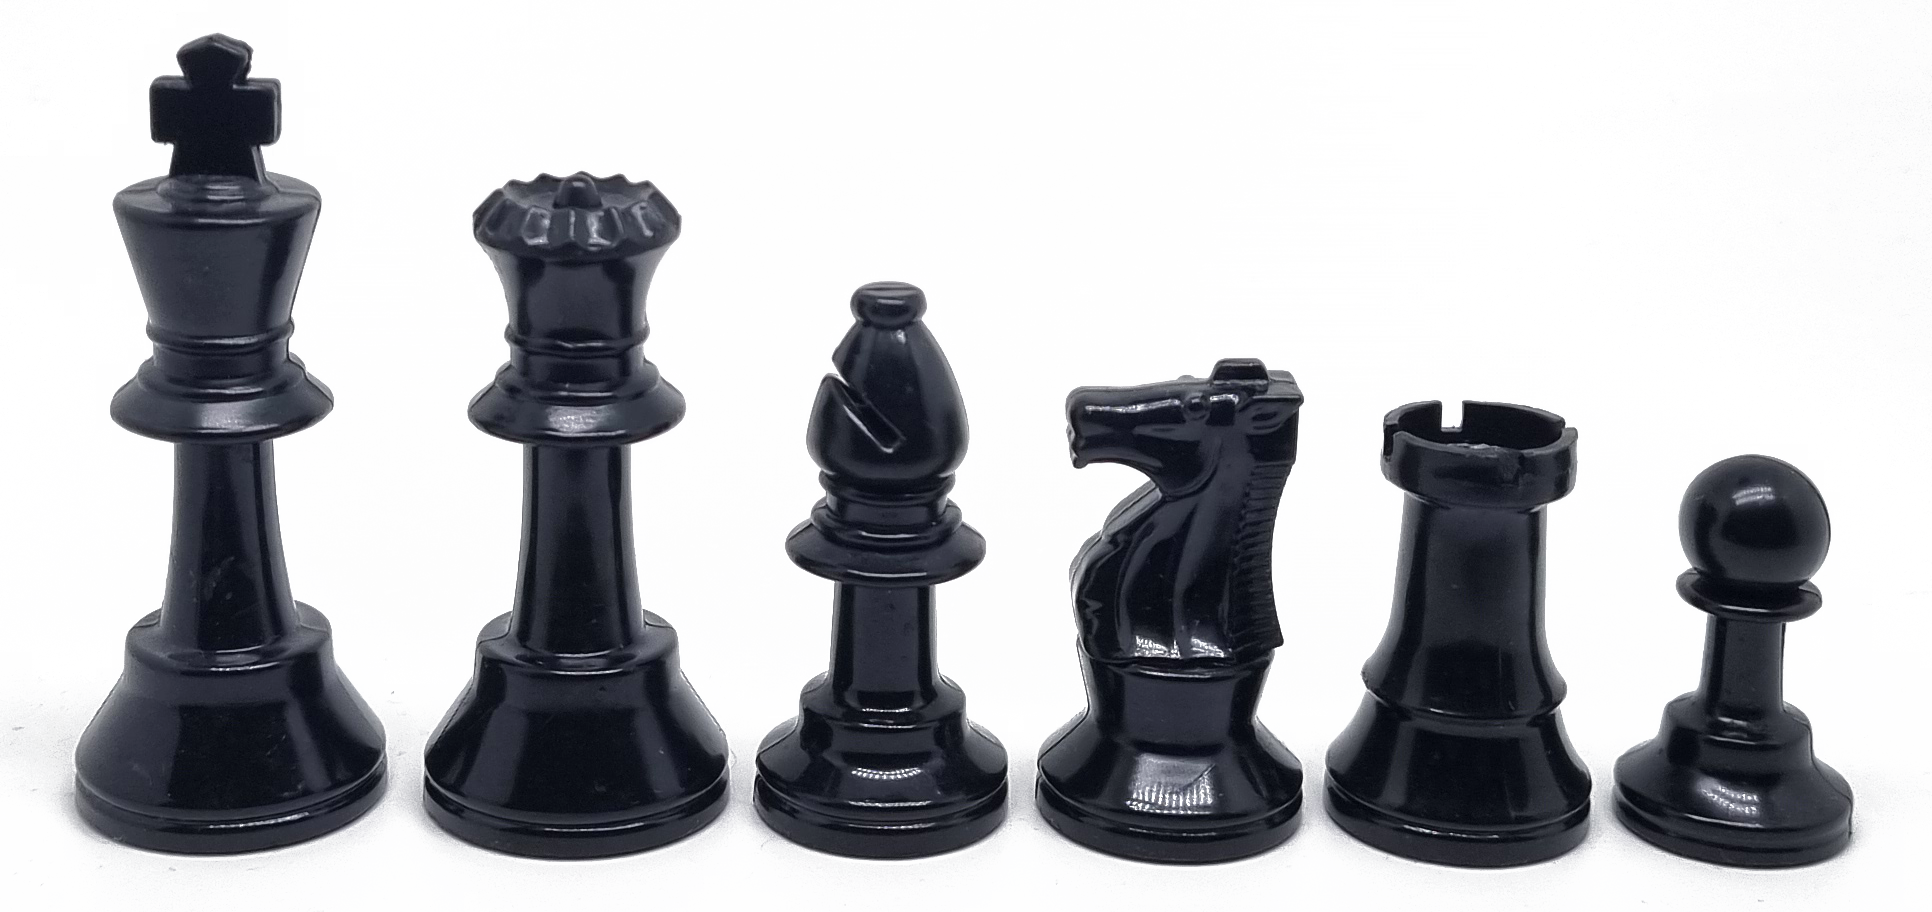 Piezas de ajedrez de plástico Staunton 2 (Altura rey 6.5 cm)